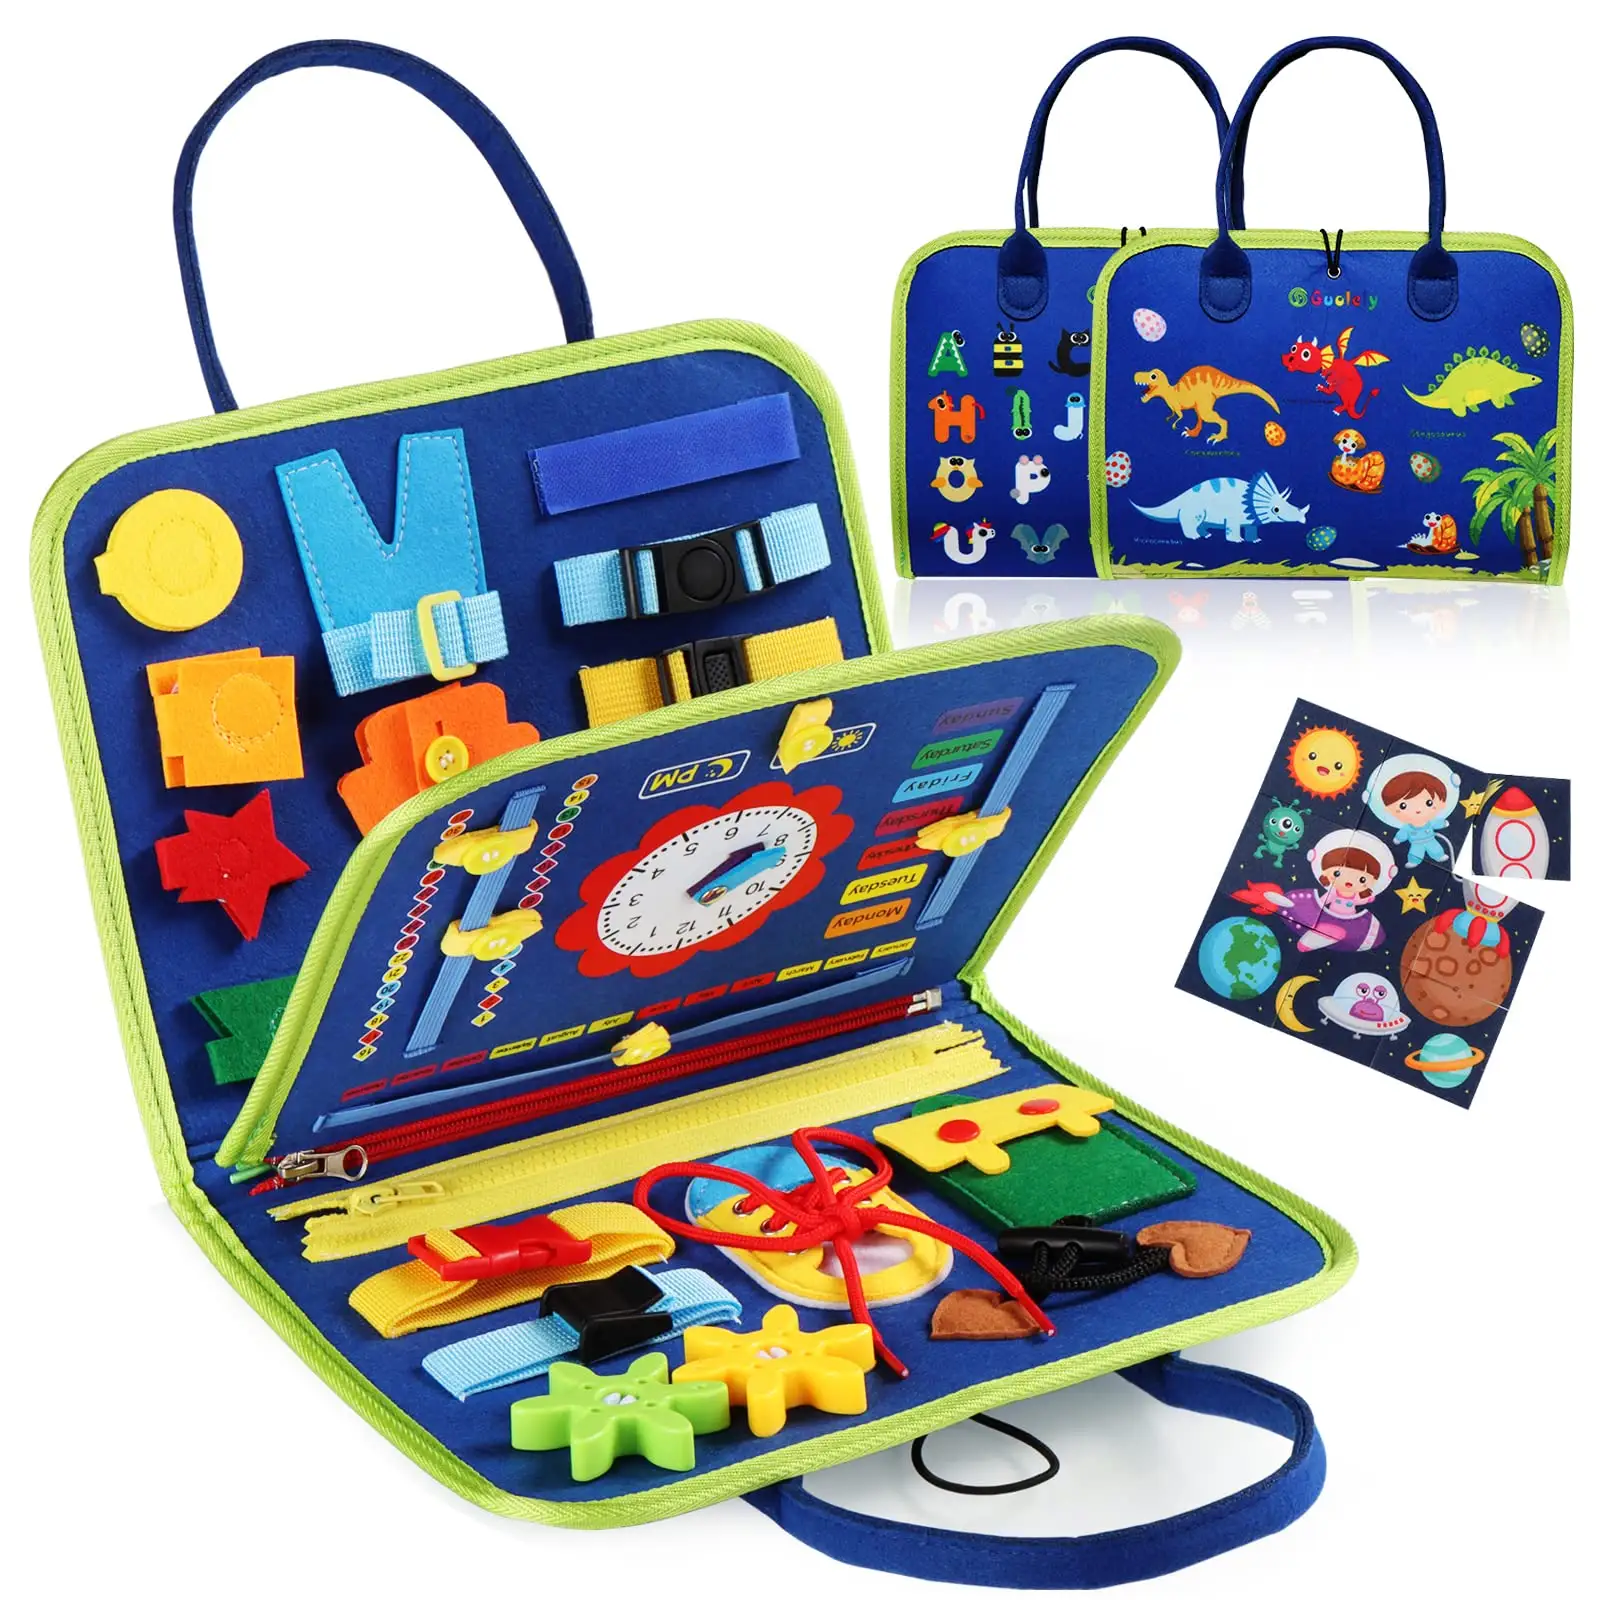 Filz beschäftigt Board Montessori Spielzeug für Kleinkinder, Bildungs aktivität Entwicklung Sensory Board für feine Basic Dress Motor Skills